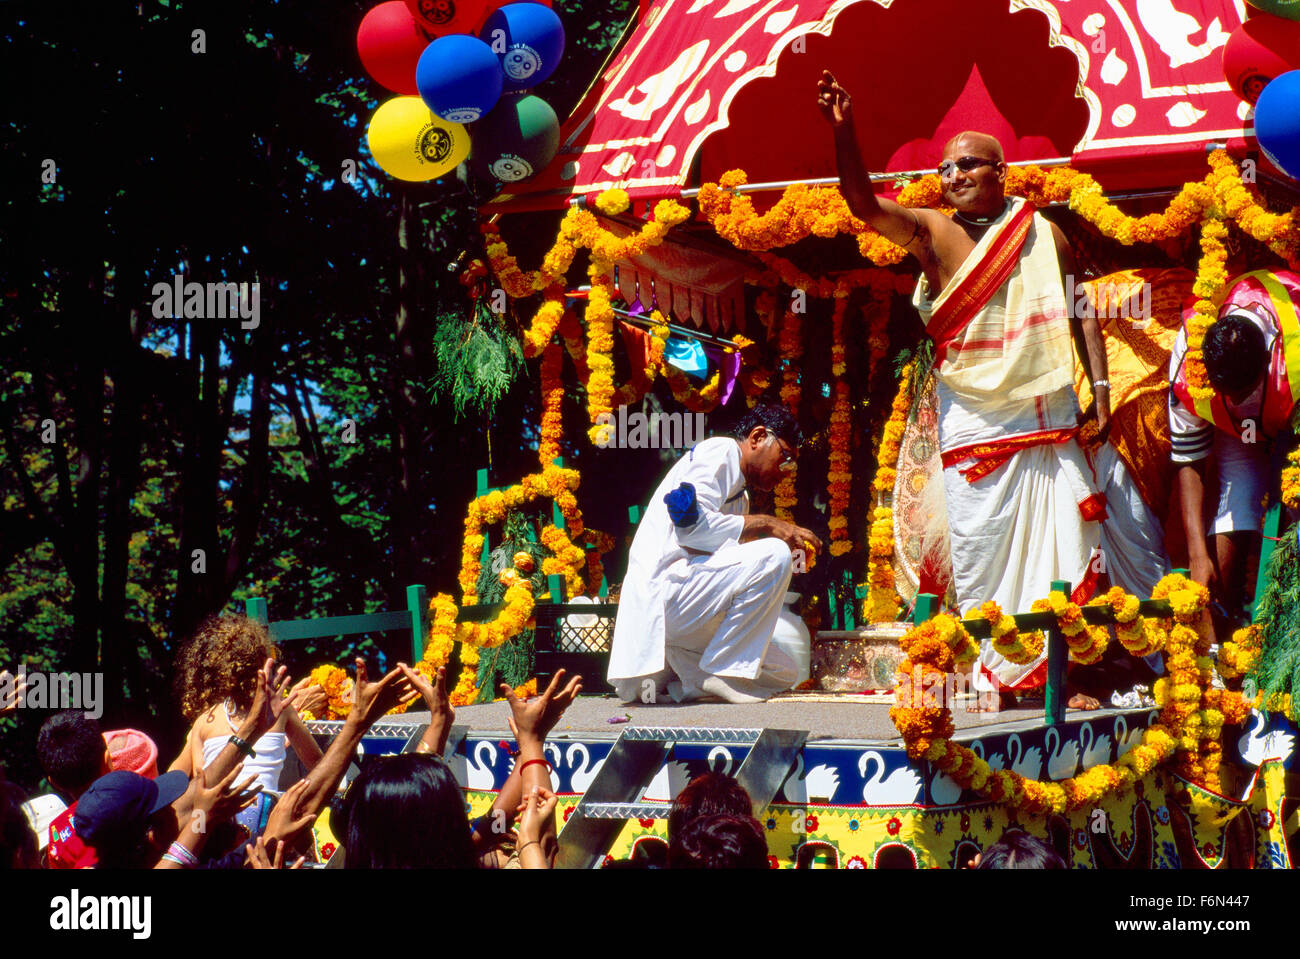 Défilé de chars d'Hare Krishna et Festival de l'Inde, Vancouver, BC - Colombie-Britannique, Canada - Les dévots de flottement suivantes Banque D'Images